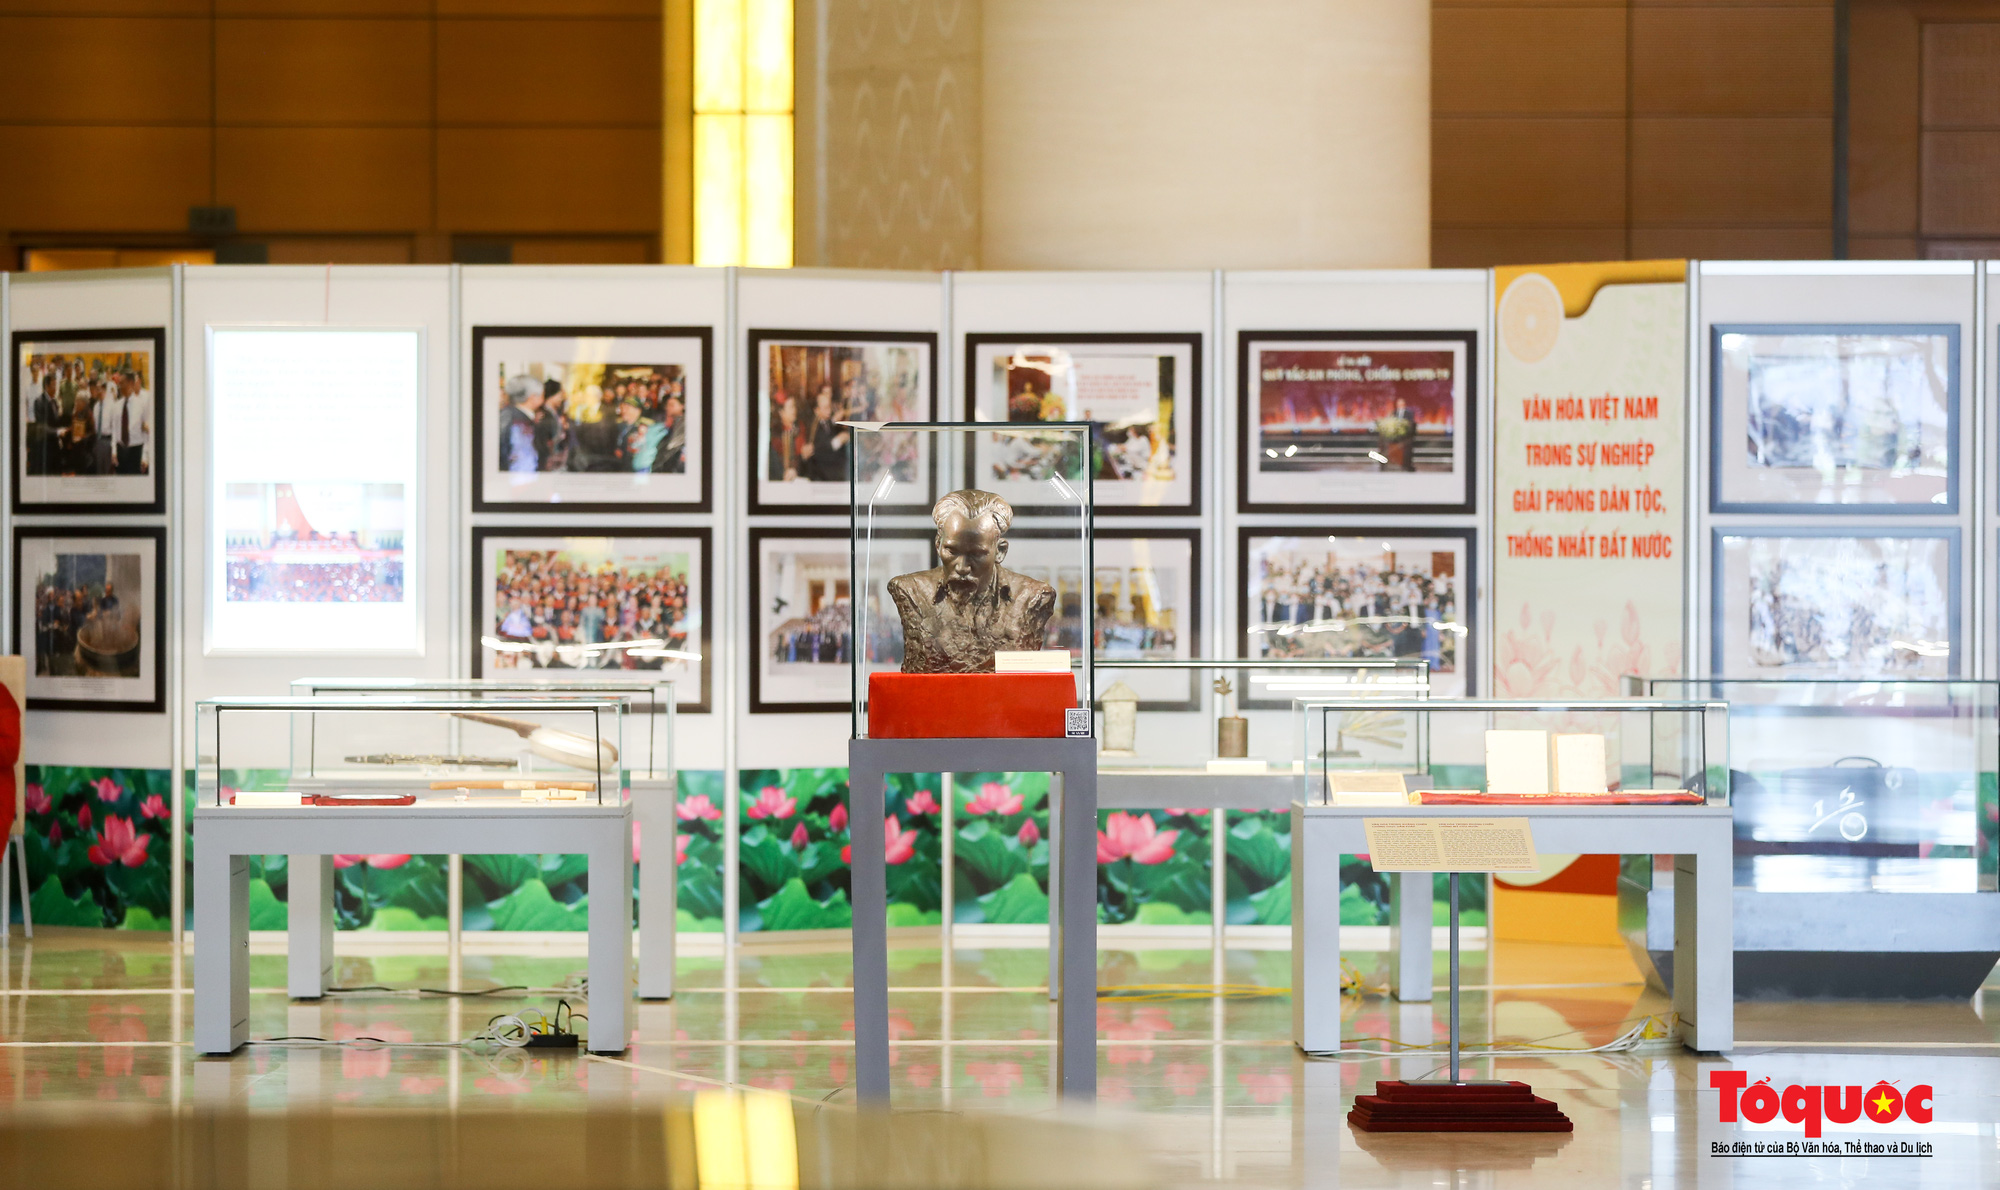 Triển lãm “Văn hóa soi đường cho quốc dân đi” trưng bày 320 tác phẩm ảnh nghệ thuật tiêu biểu - Ảnh 3.